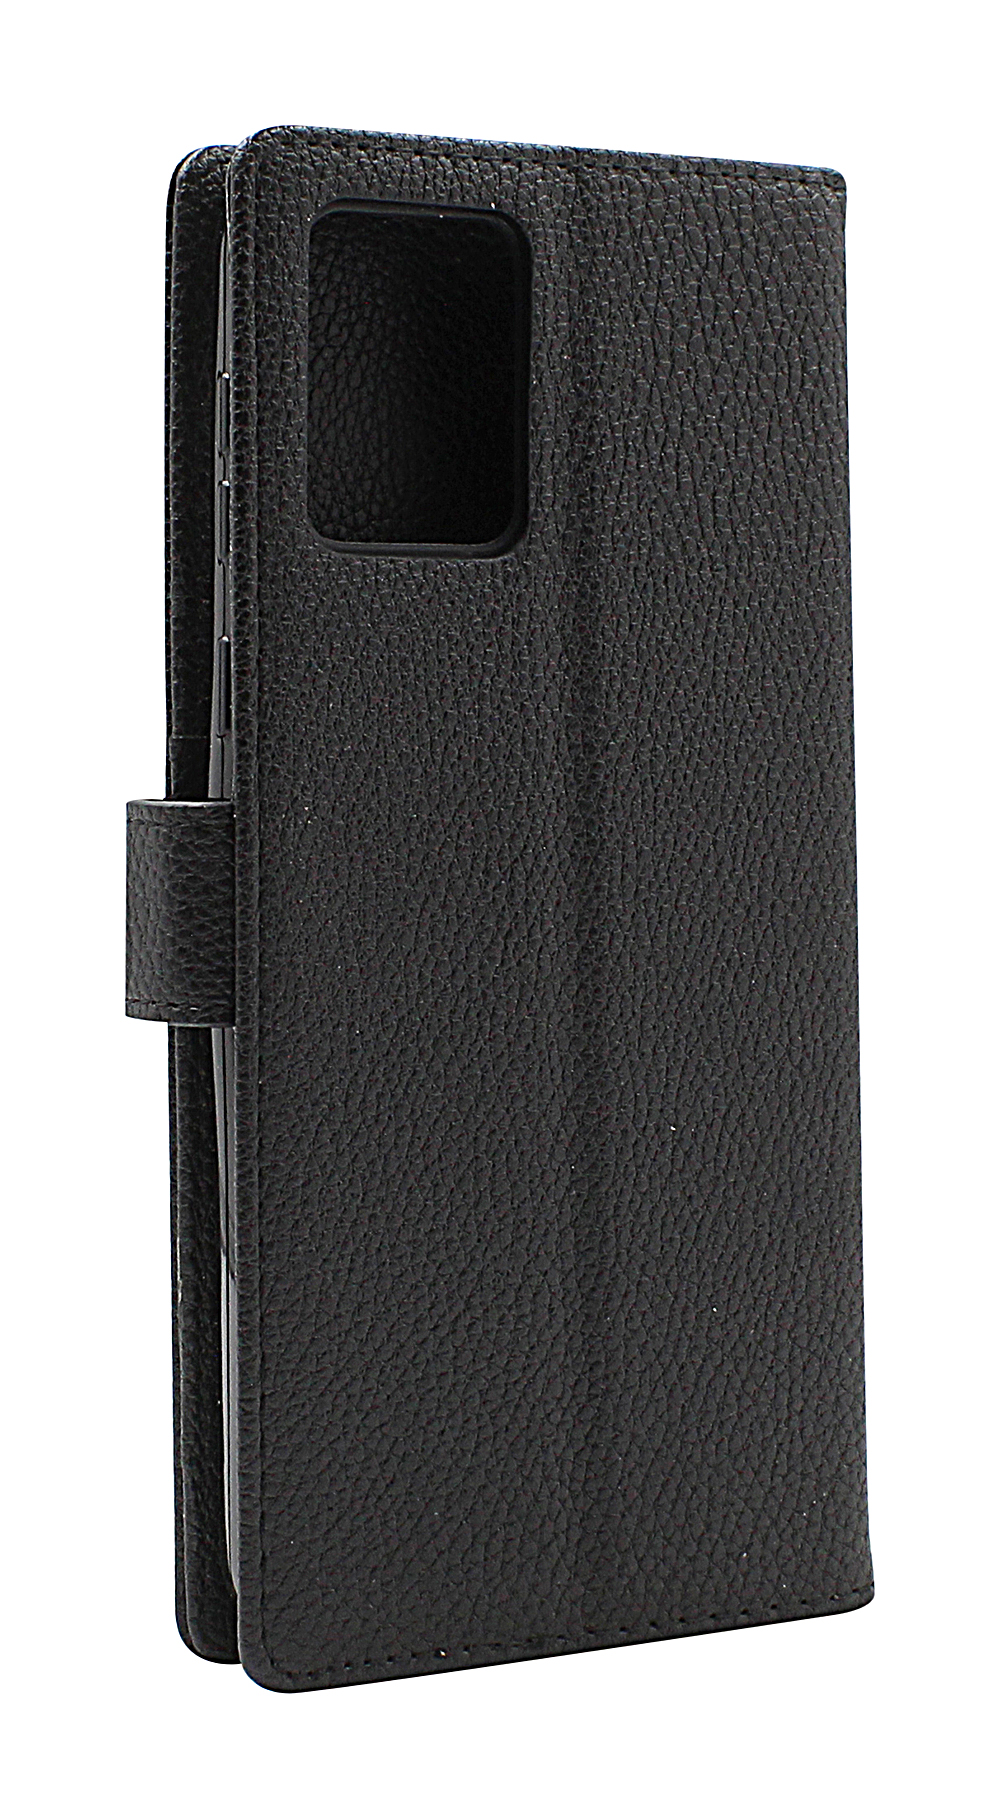 billigamobilskydd.seNew Standcase Wallet Motorola Moto E13